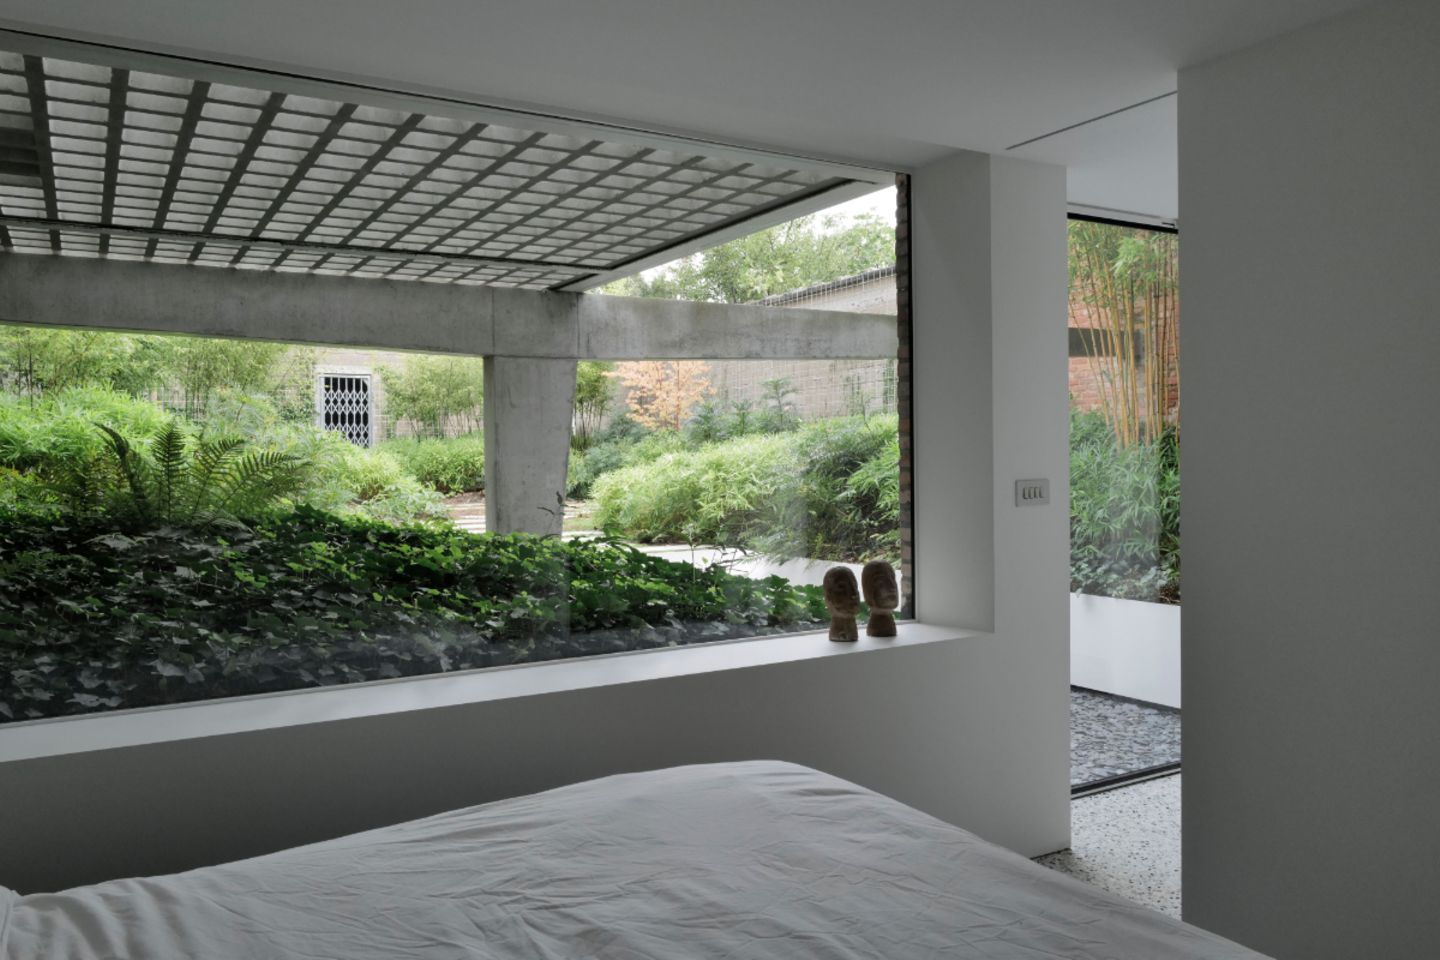 Souterrain-Schlafzimmer mit Blick auf Wintergarten mit viel Grün und Betonkonstruktion mit Terrasse